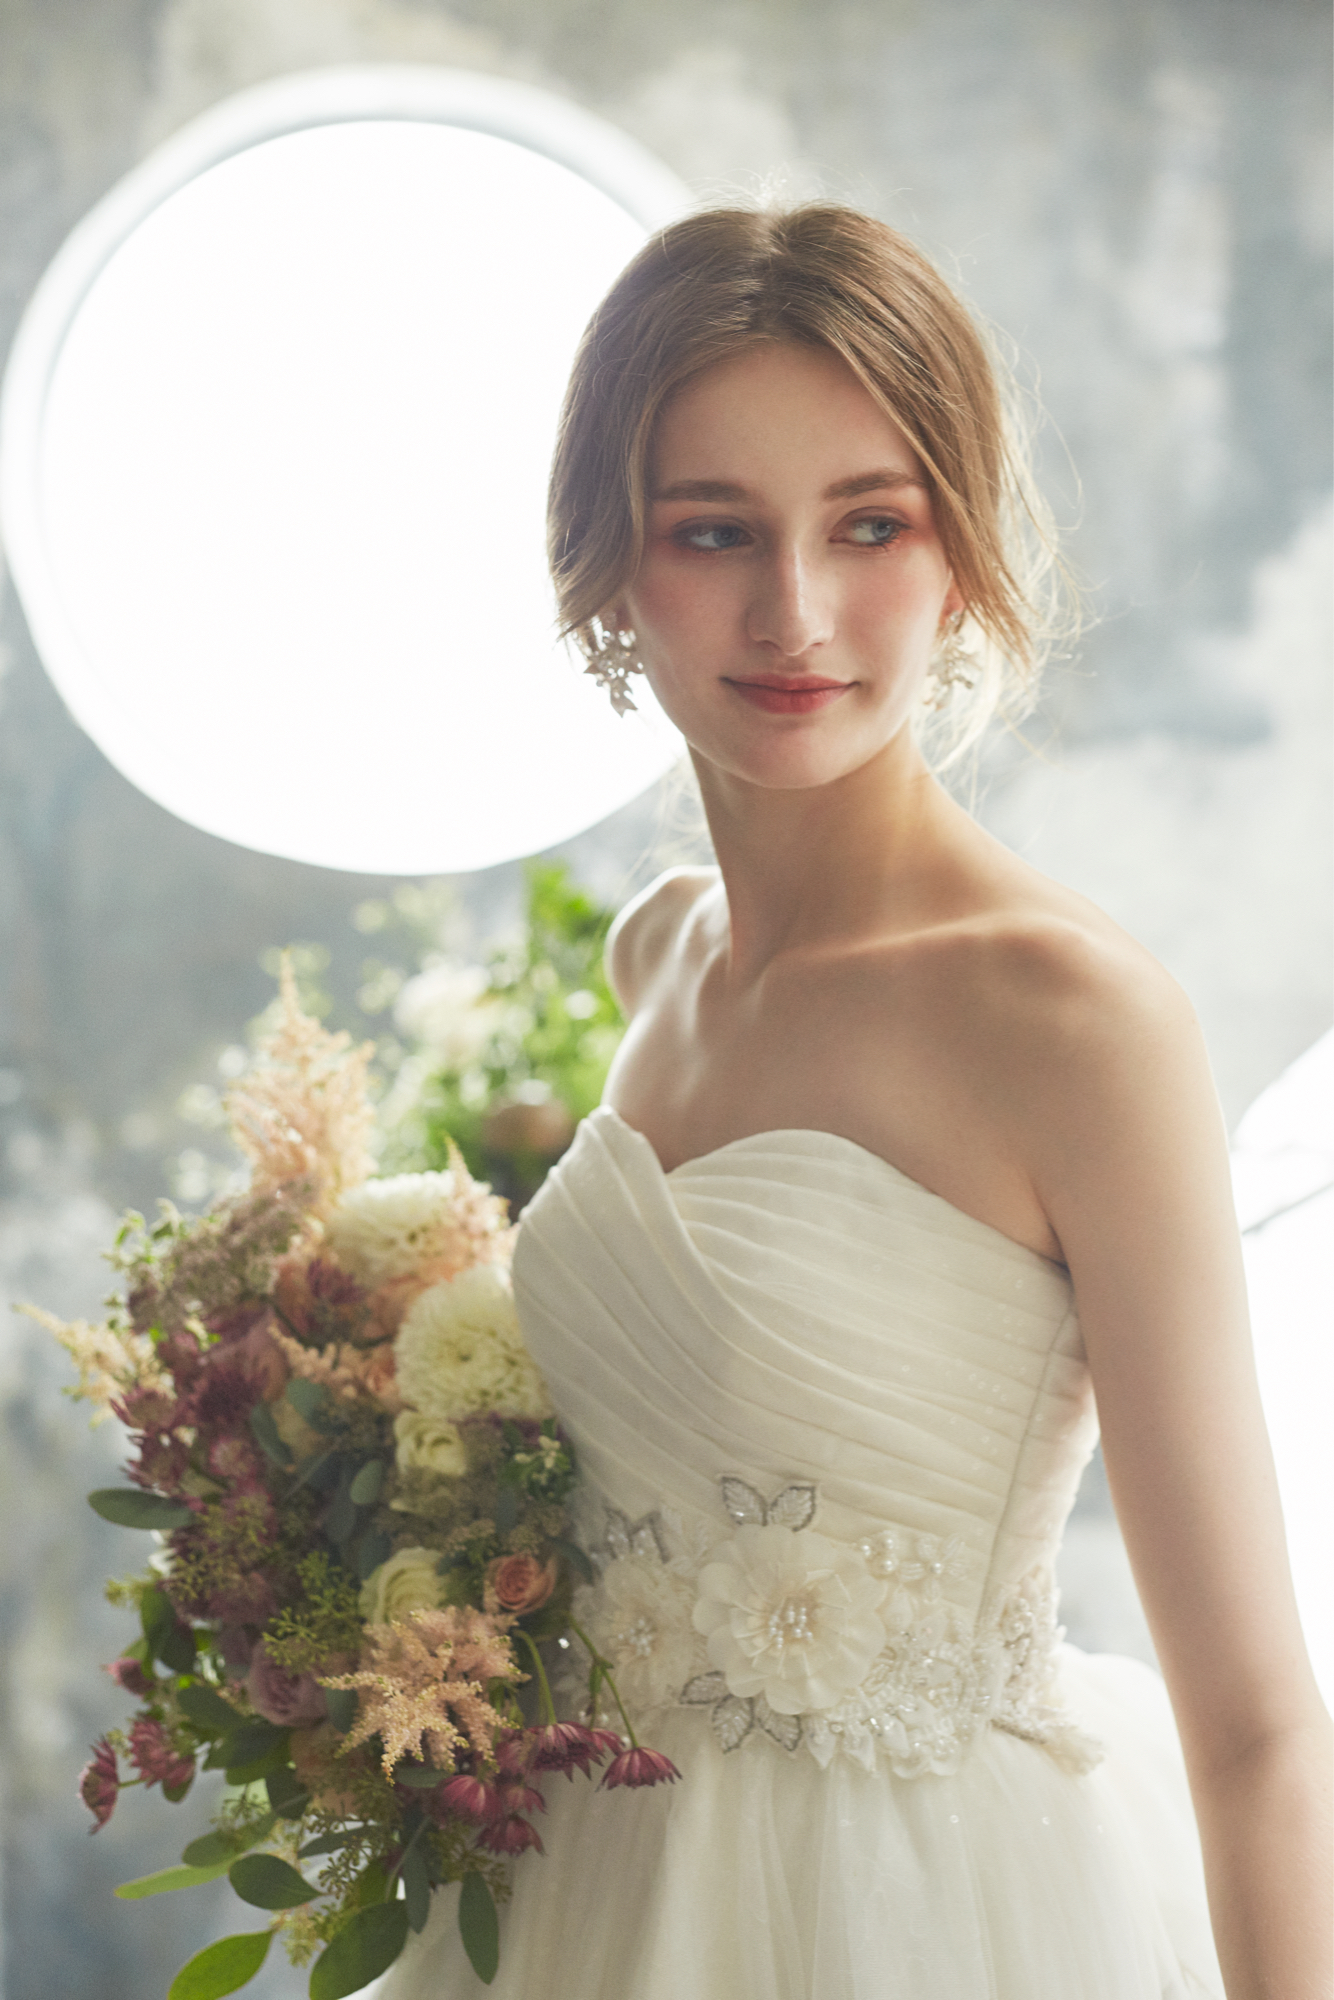 最新版 ウェディングドレスに似合う髪型は 結婚式までにどんな準備をしたらよい ブライダルハウスtutu